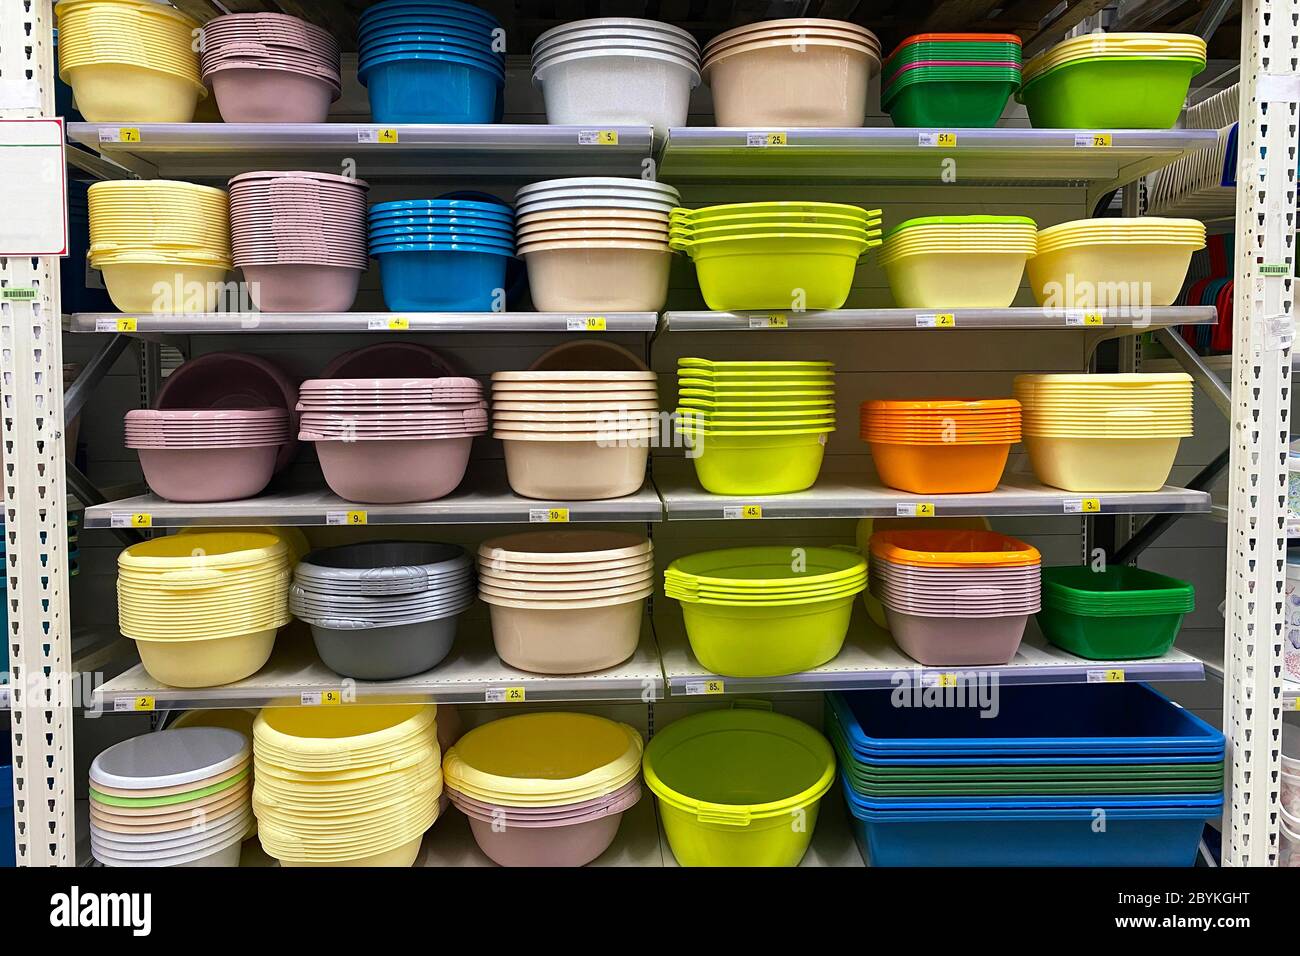 Einkaufen mit Hintergrund von bunten Plastikkörben, Schalen und Waschbecken im Regal. Preiswerte Alternative zu Gerichten aus natürlichen Materialien. Stockfoto